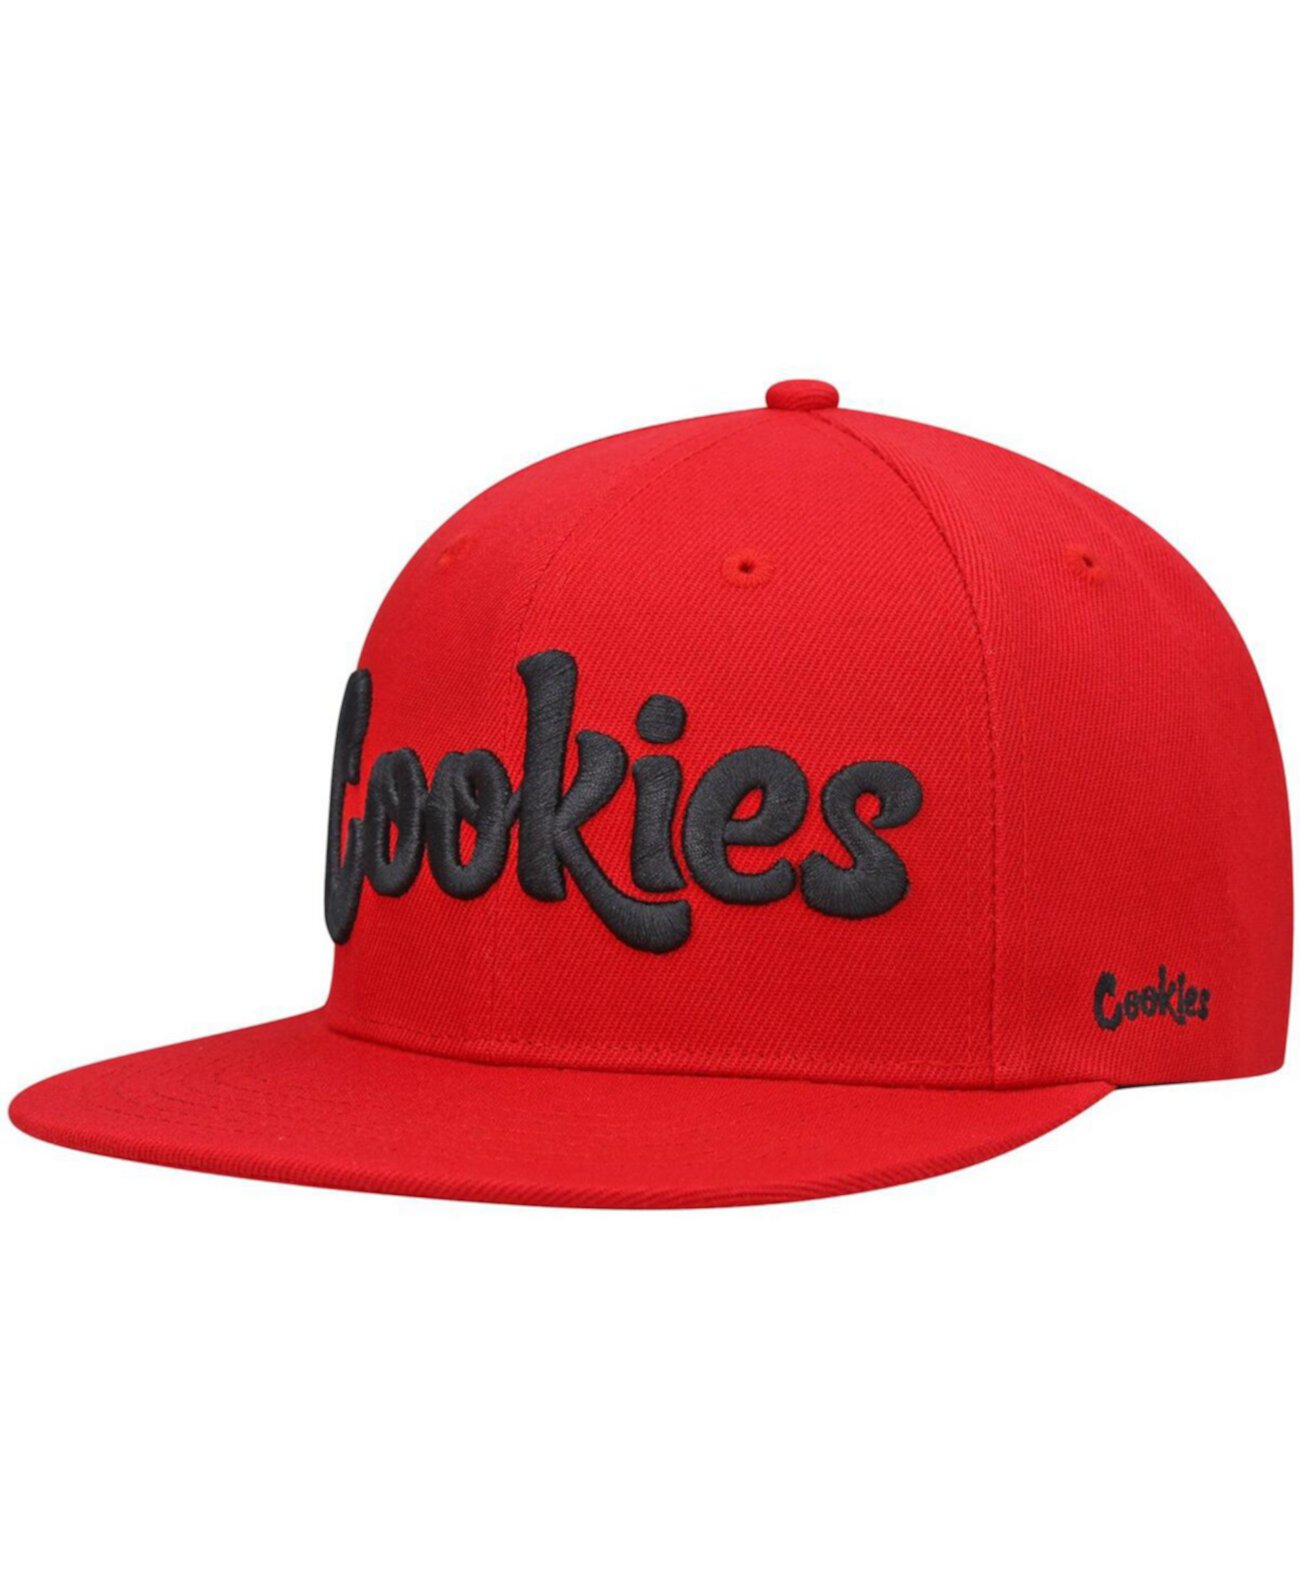 Мужская красная кепка Snapback с однотонным логотипом Original мятного цвета Cookies